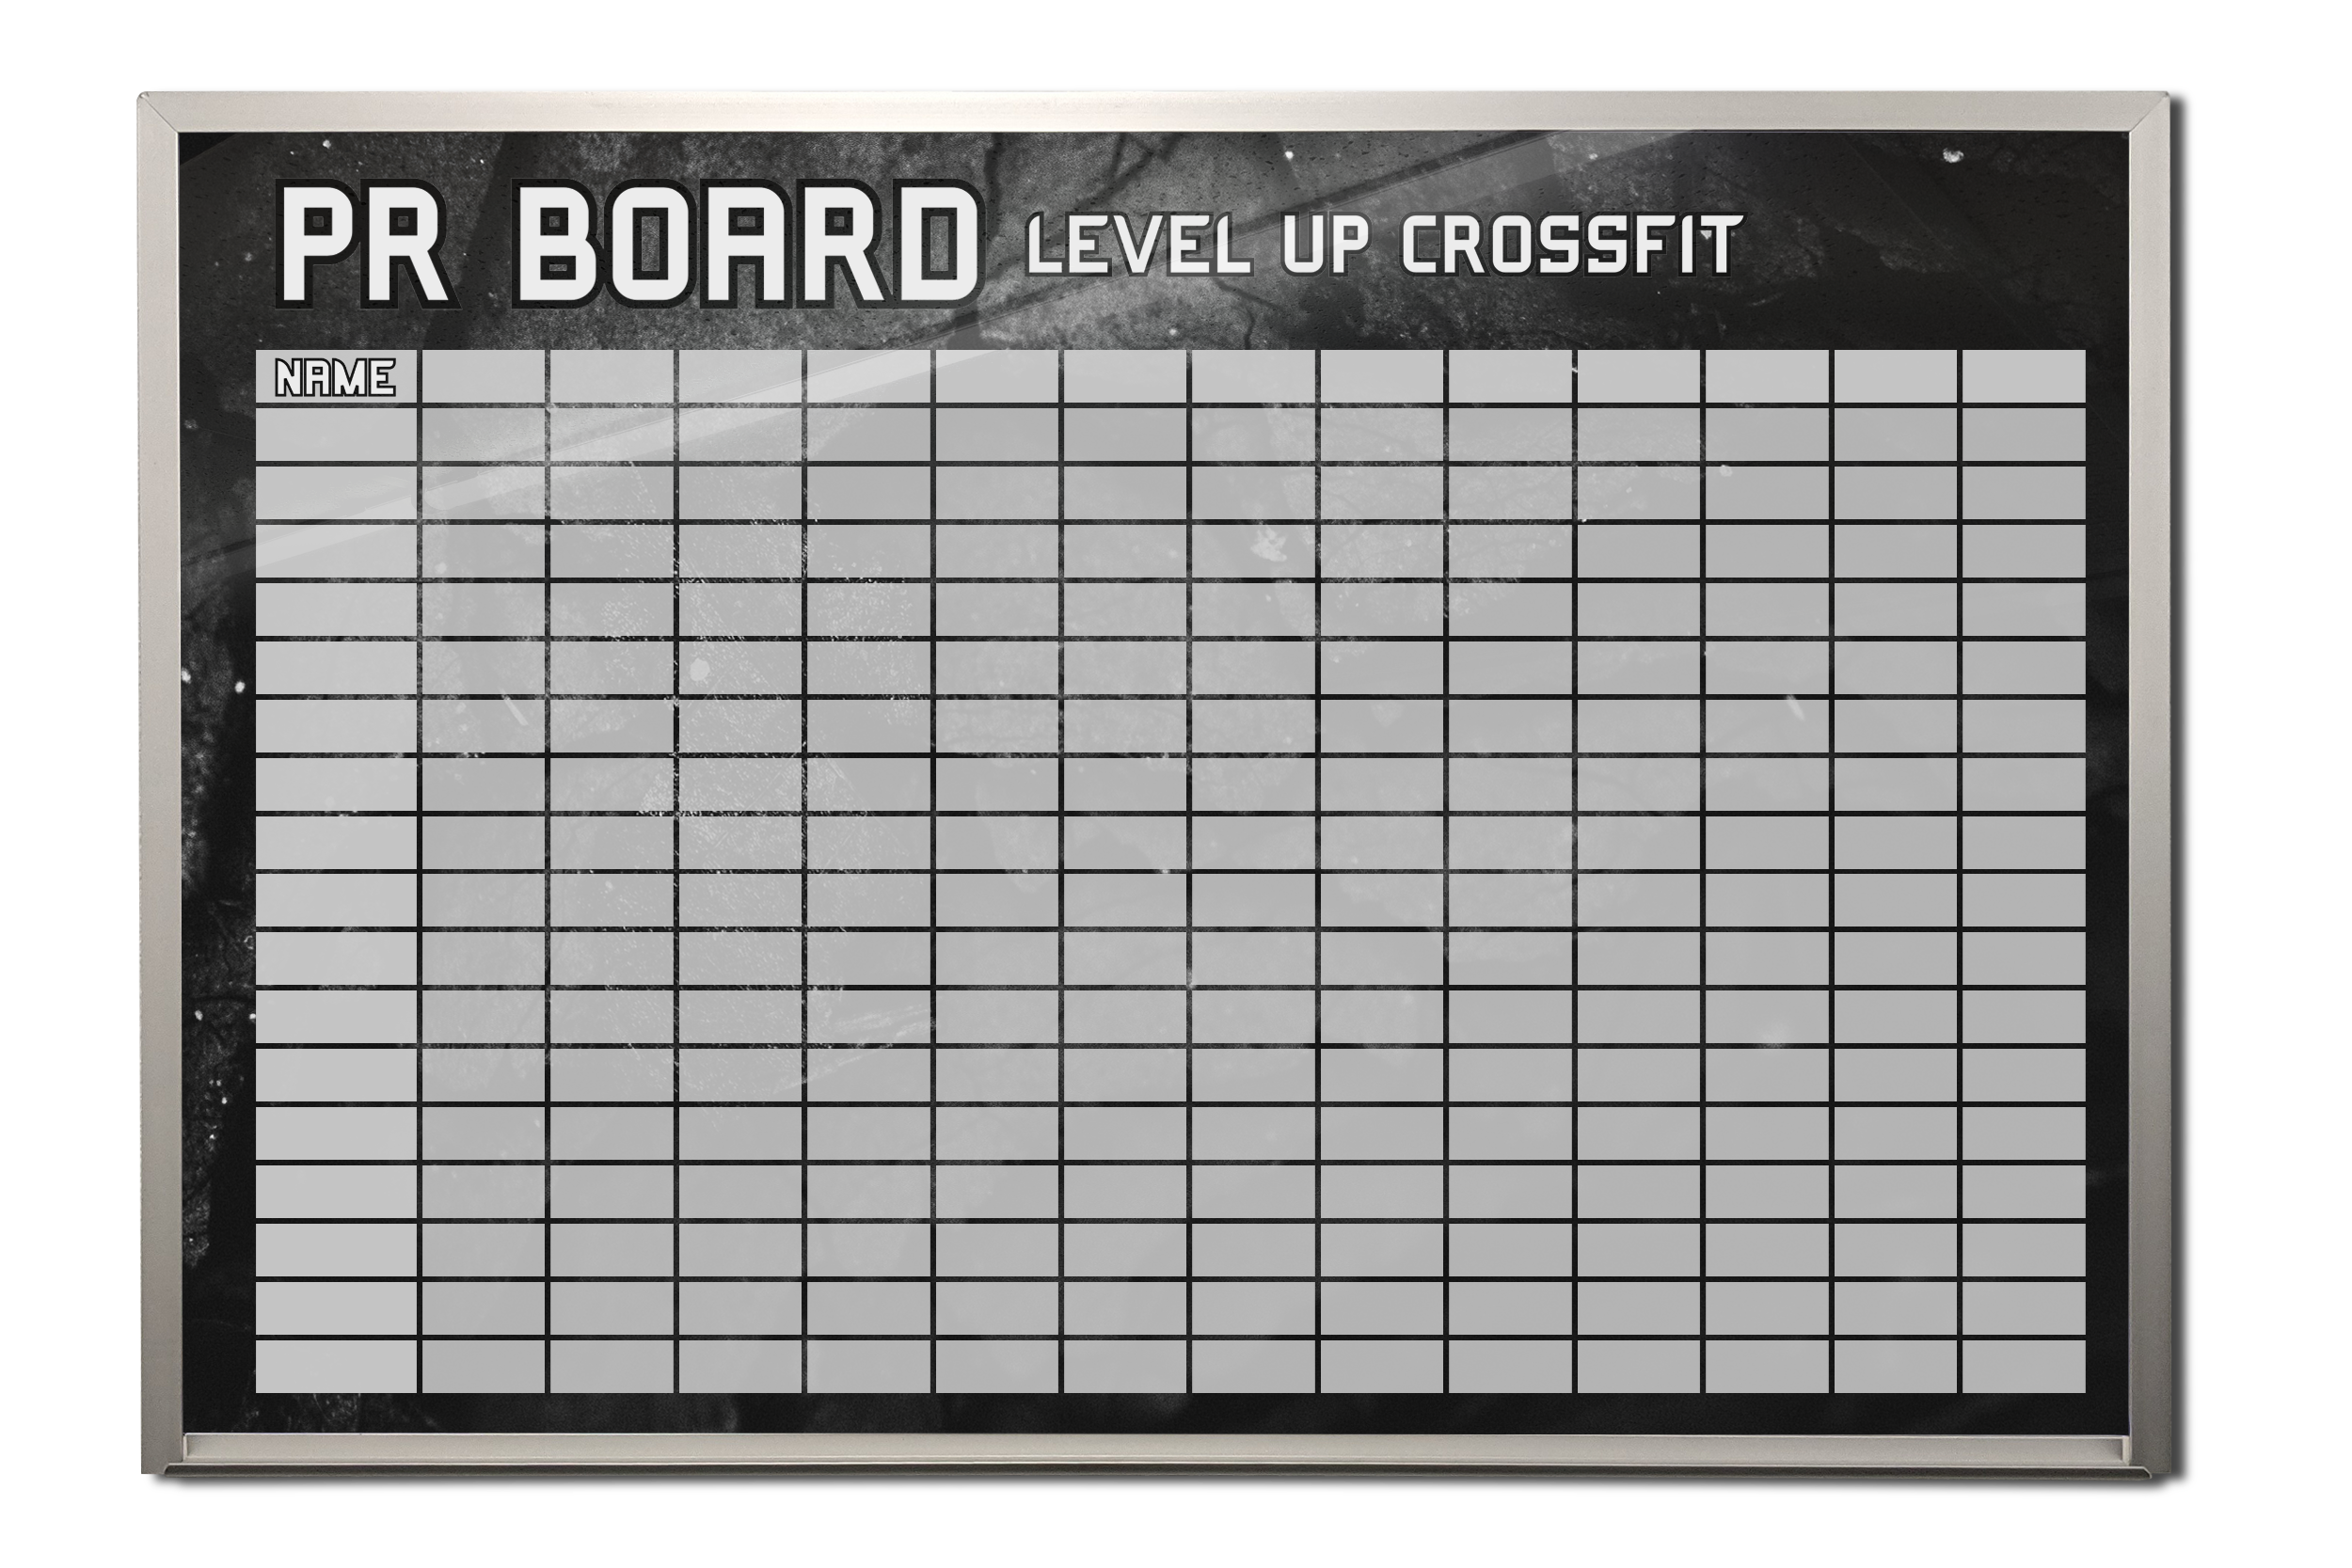 Personal Record Crossfit Board